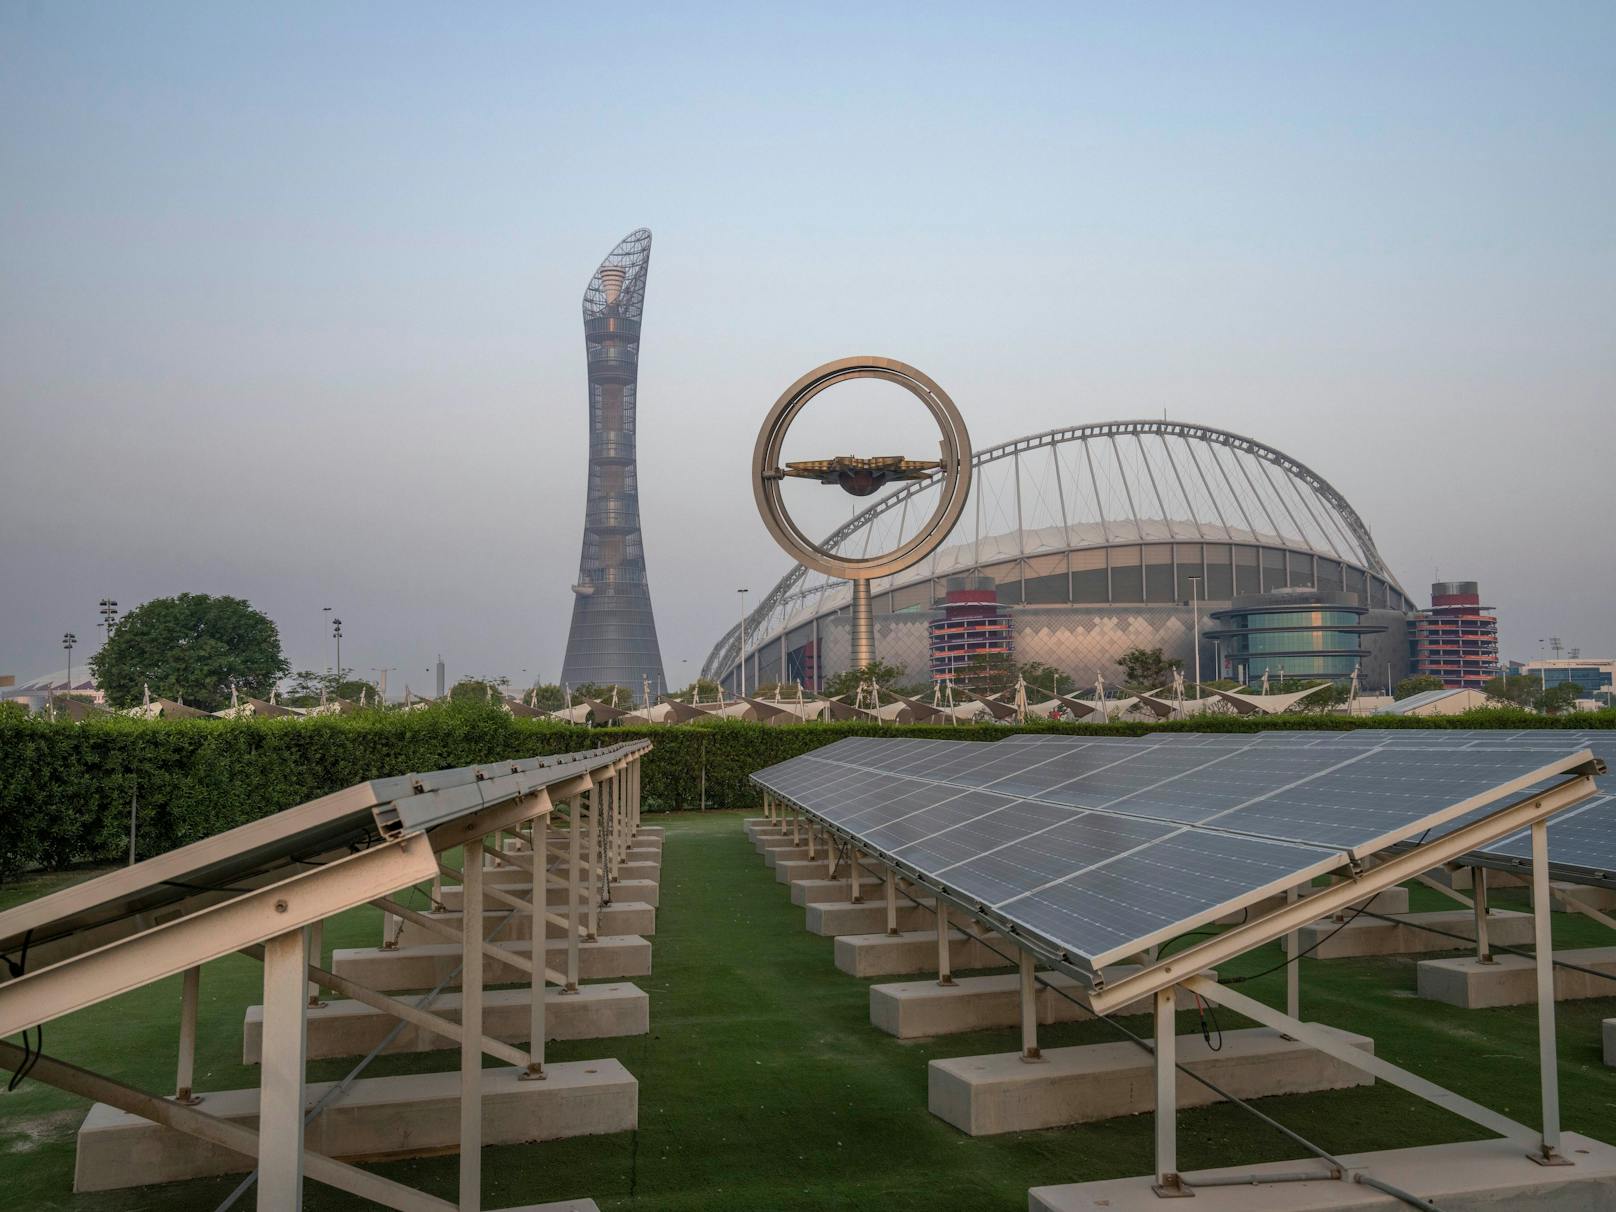 Sonnenkollektoren vor dem Khalifa International Stadium in Doha, wo die FIFA Fußball-Weltmeisterschaft 2022 ausgetragen wird. Derzeit spielen erneuerbare Energien mit einem Anteil von 0,1 % an der Stromerzeugung eine vernachlässigbare Rolle im katarischen Energiesektor.